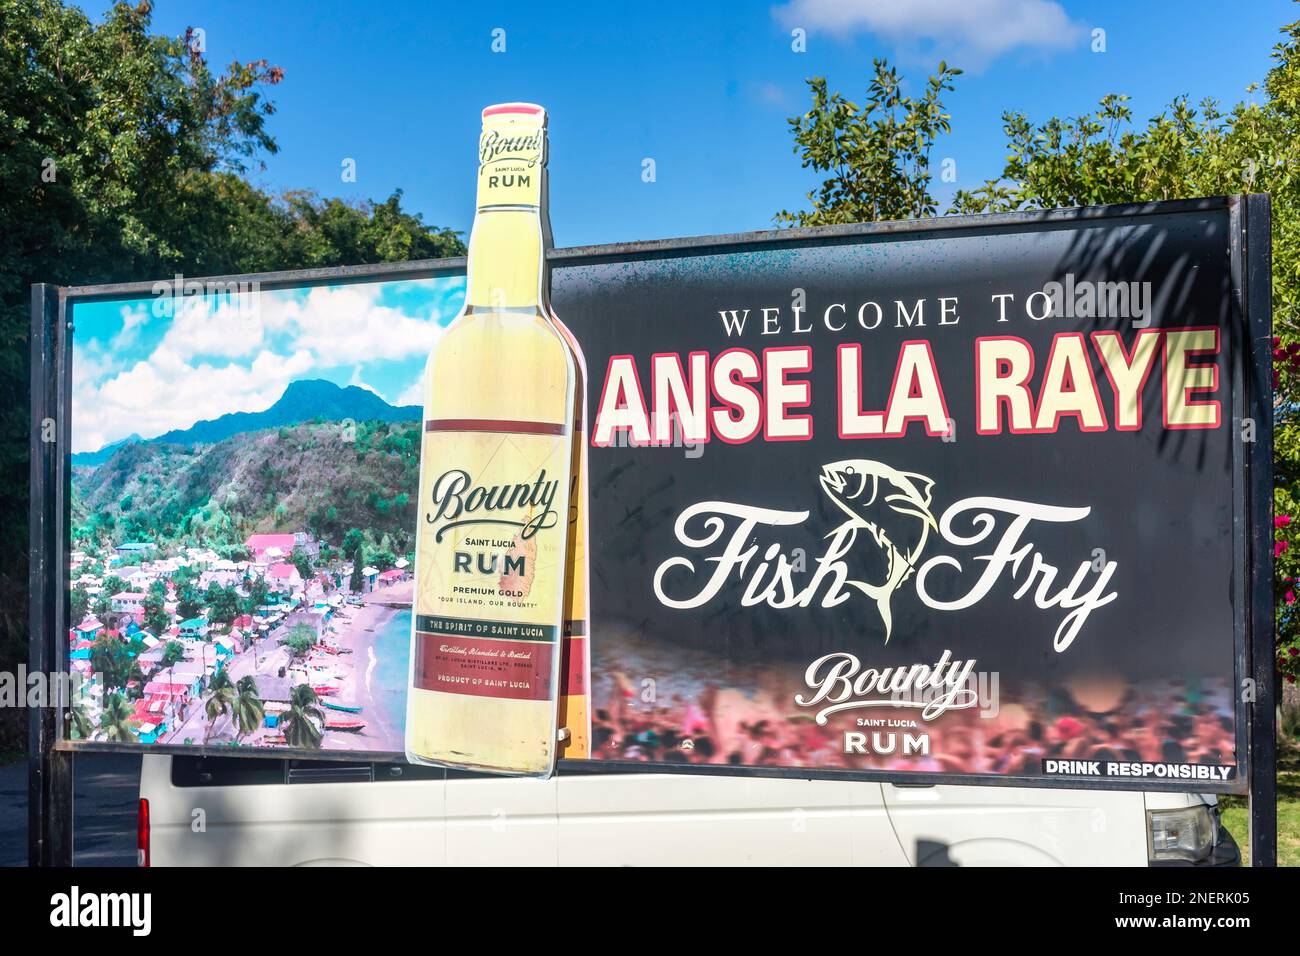 Signe de bienvenue publicité Vendredi Fish Fry événement, Anse la Raye, Anse la Raye District, Sainte-Lucie, Petites Antilles, Caraïbes Banque D'Images